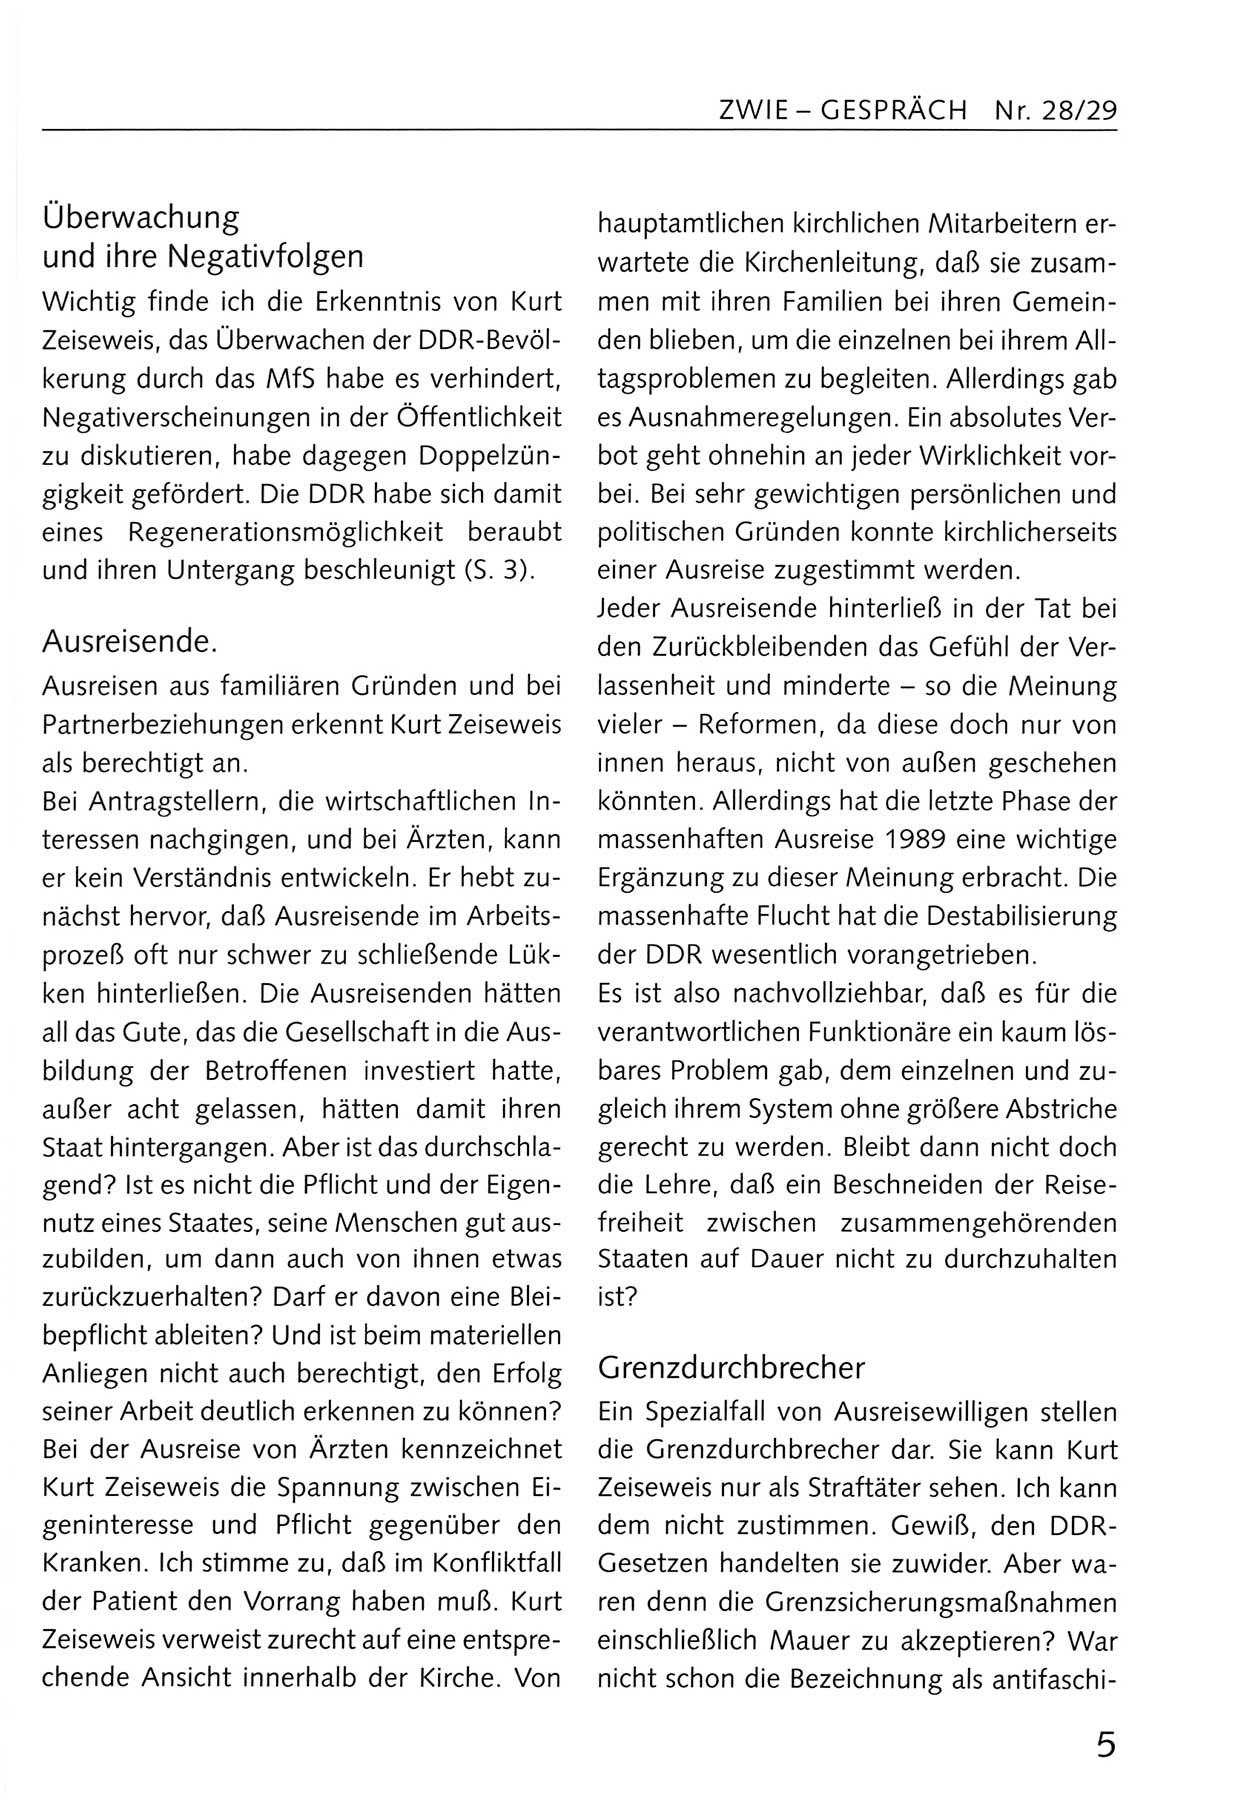 Zwie-Gespräch, Beiträge zum Umgang mit der Staatssicherheits-Vergangenheit [Deutsche Demokratische Republik (DDR)], Ausgabe Nr. 28/29, Berlin 1995, Seite 5 (Zwie-Gespr. Ausg. 28/29 1995, S. 5)